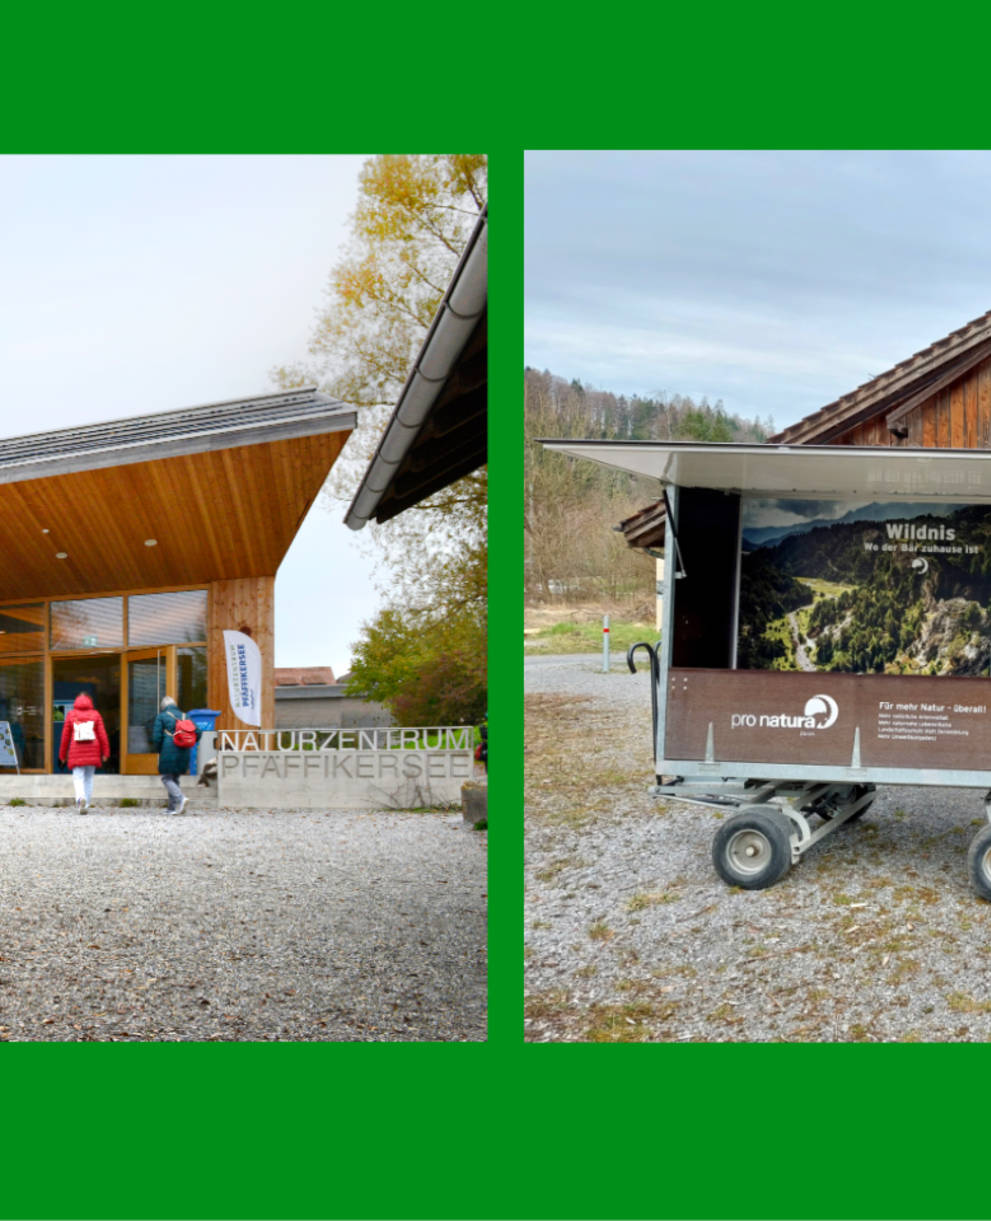 Links: Naturzentrum Pfäffikersee, Rechts: Wildnispark Zürich